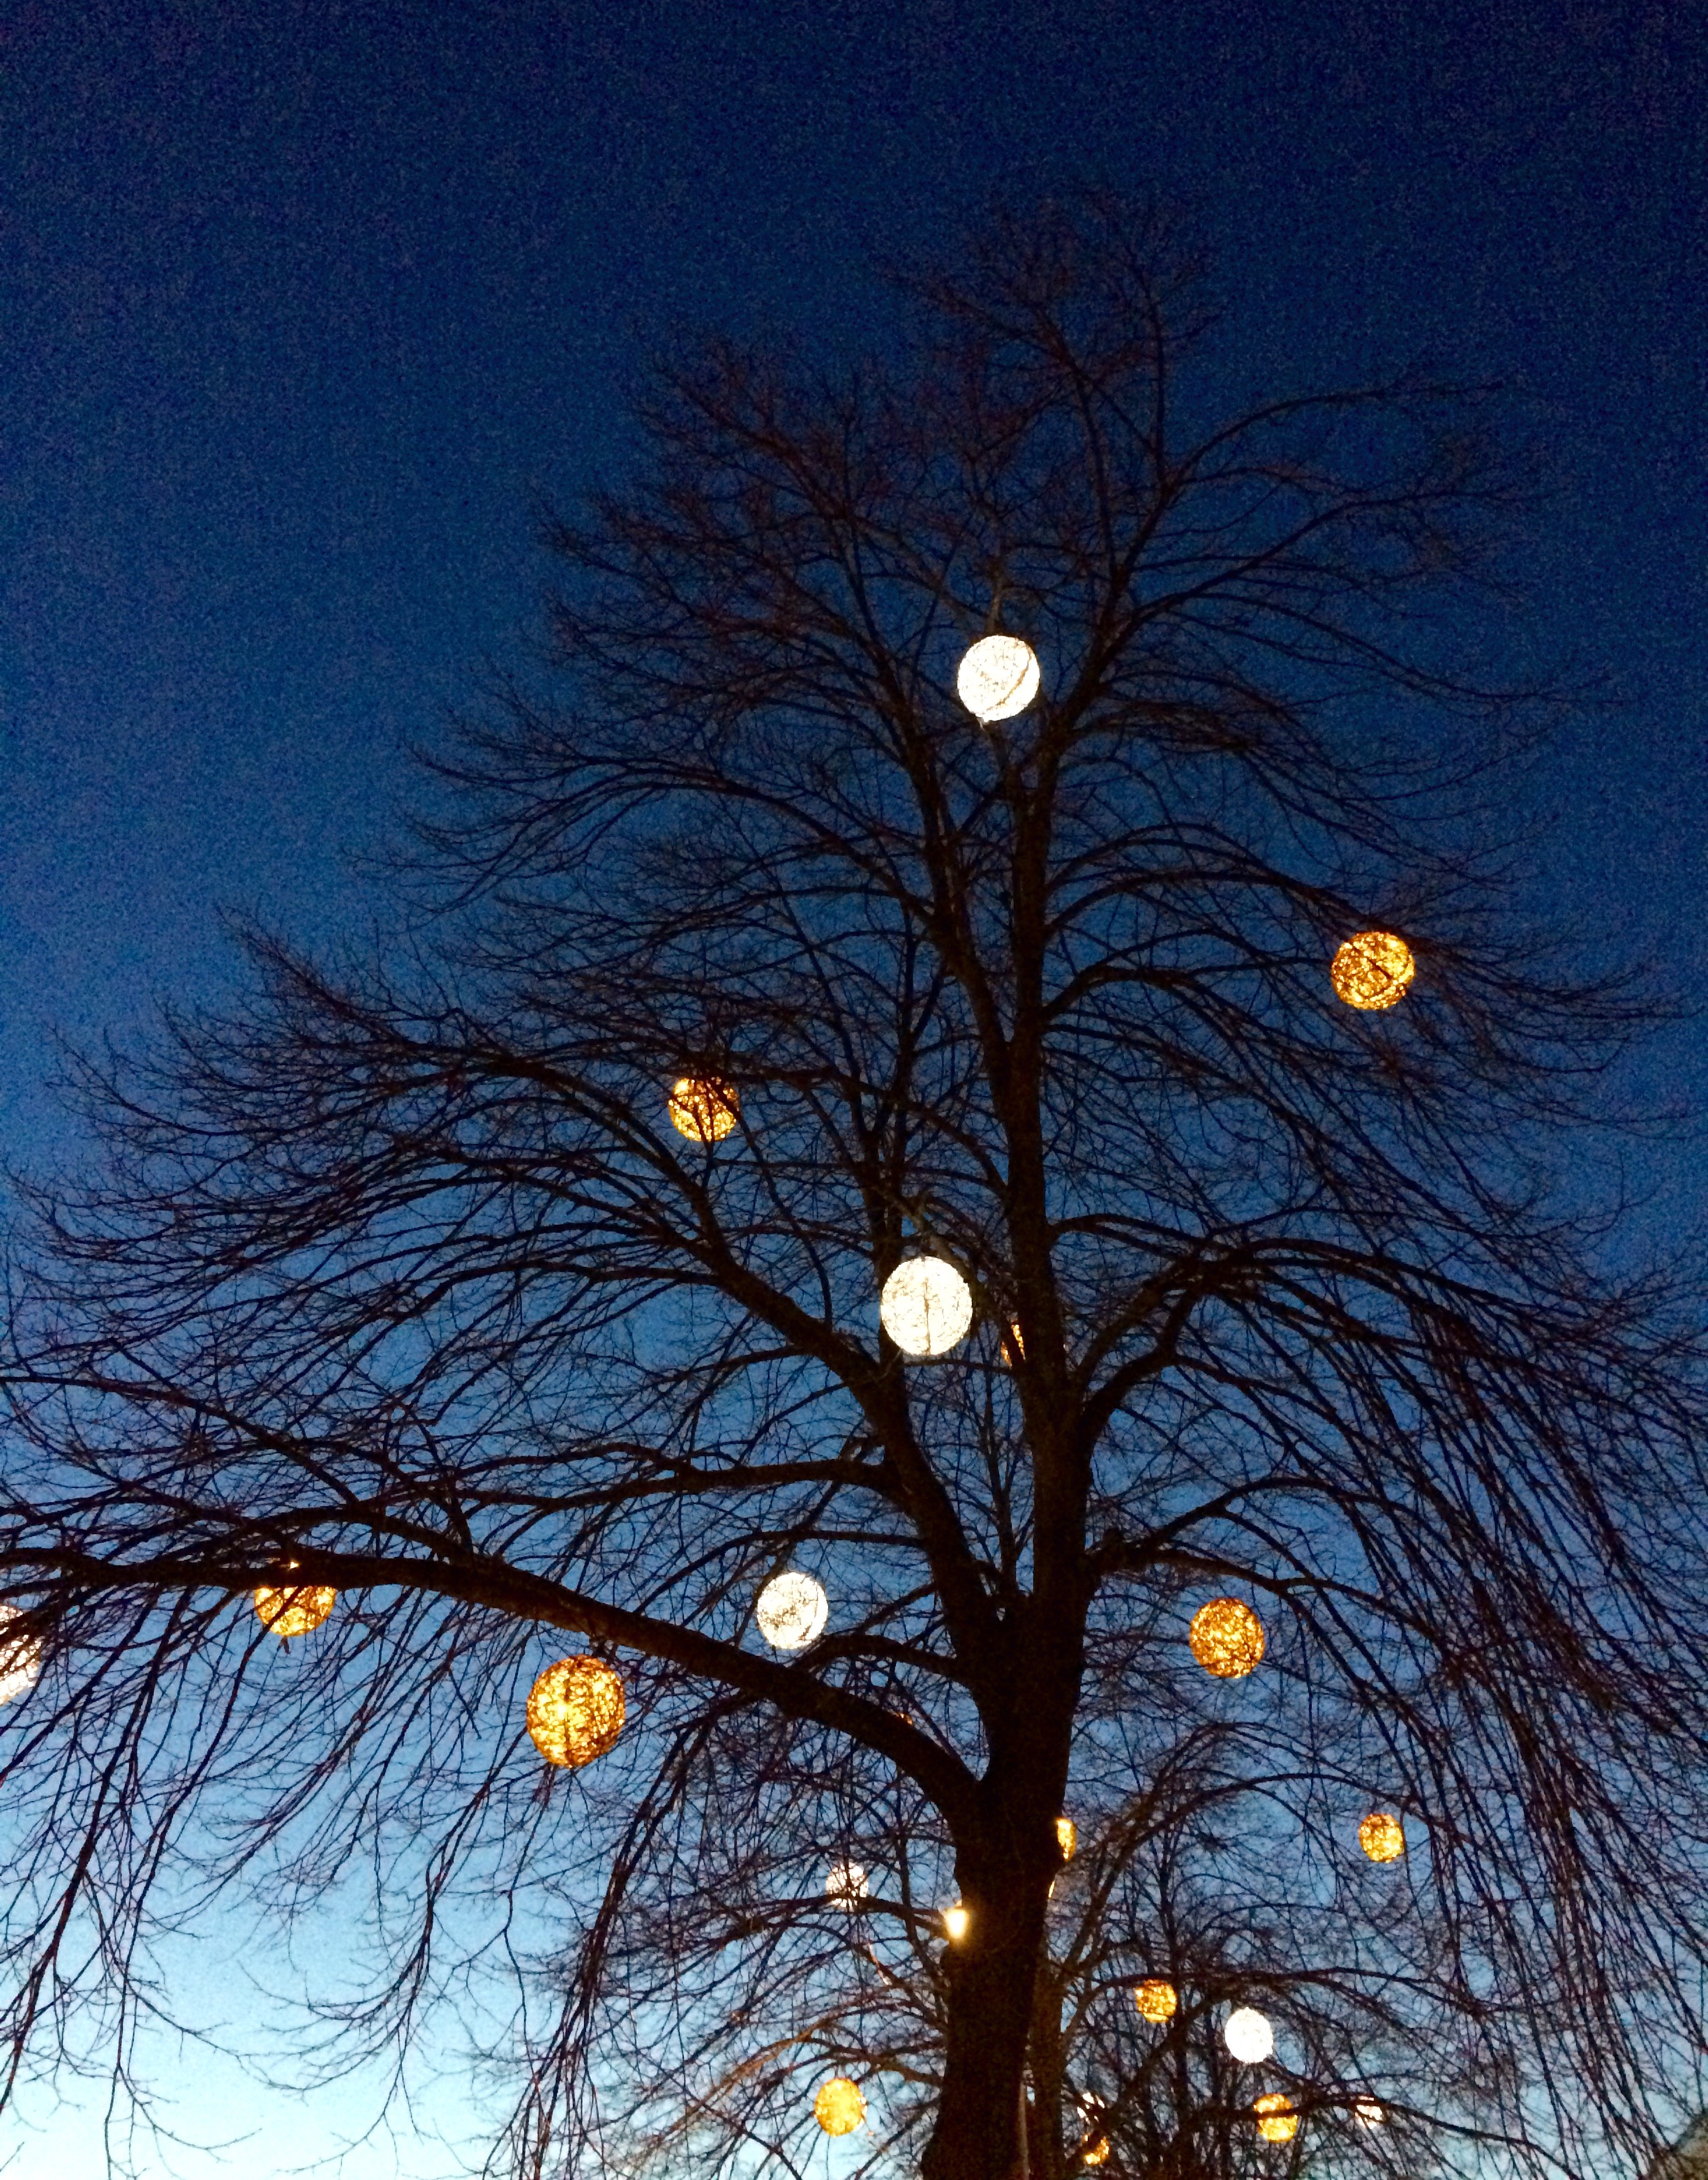 Vilka fina ljusbollar i trädet. 